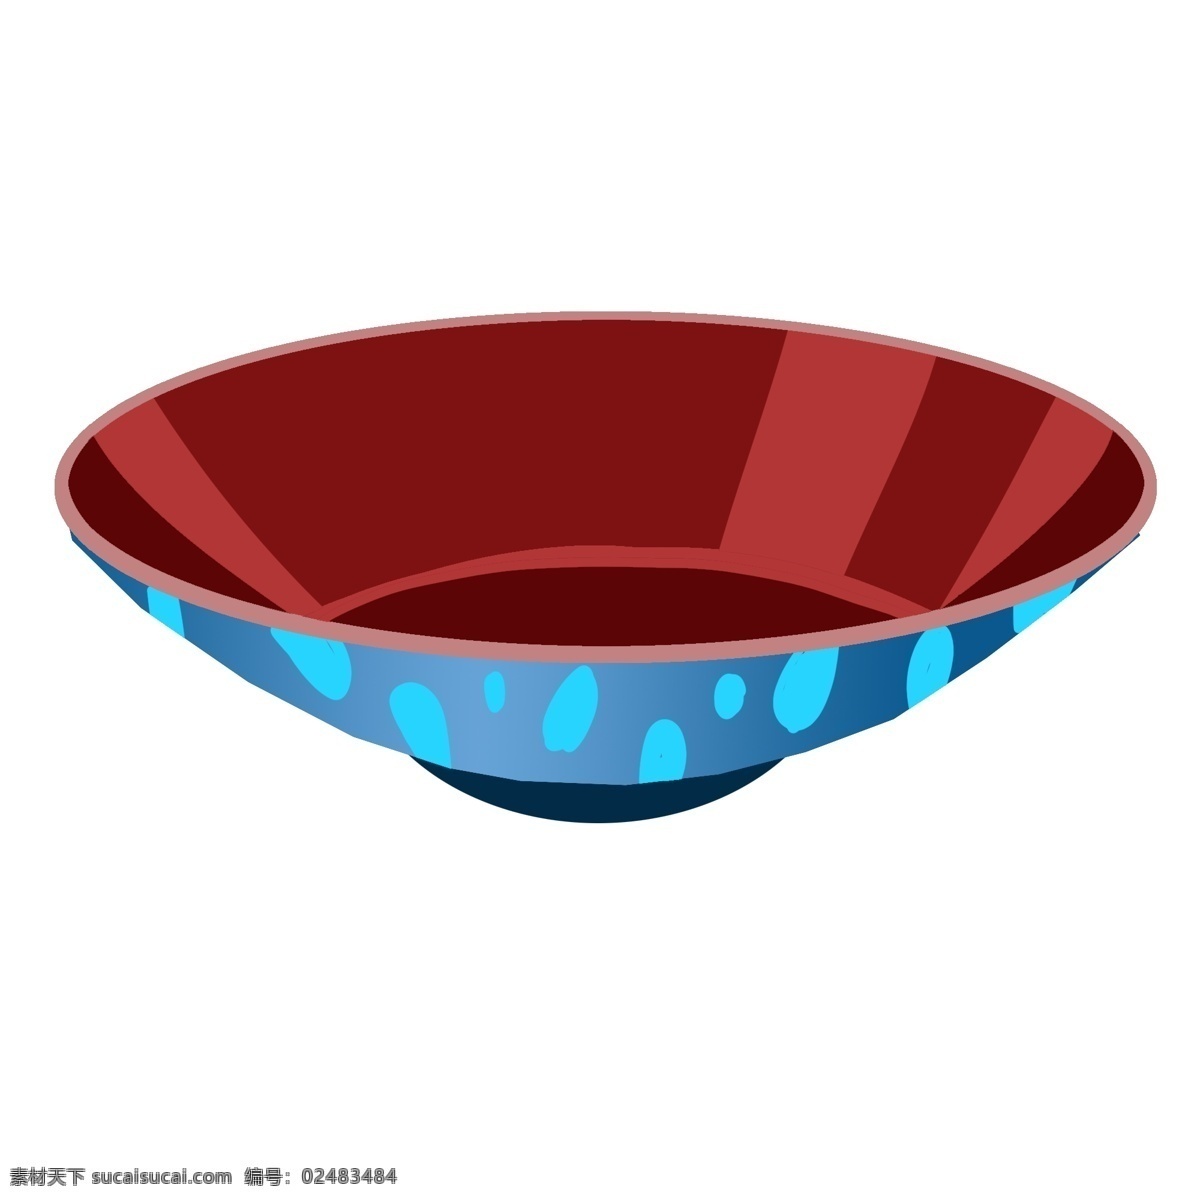 红色 小 碗 装饰 插画 红色的小碗 漂亮的小碗 创意小碗 小碗装饰 小碗插画 立体小碗 可爱的小碗